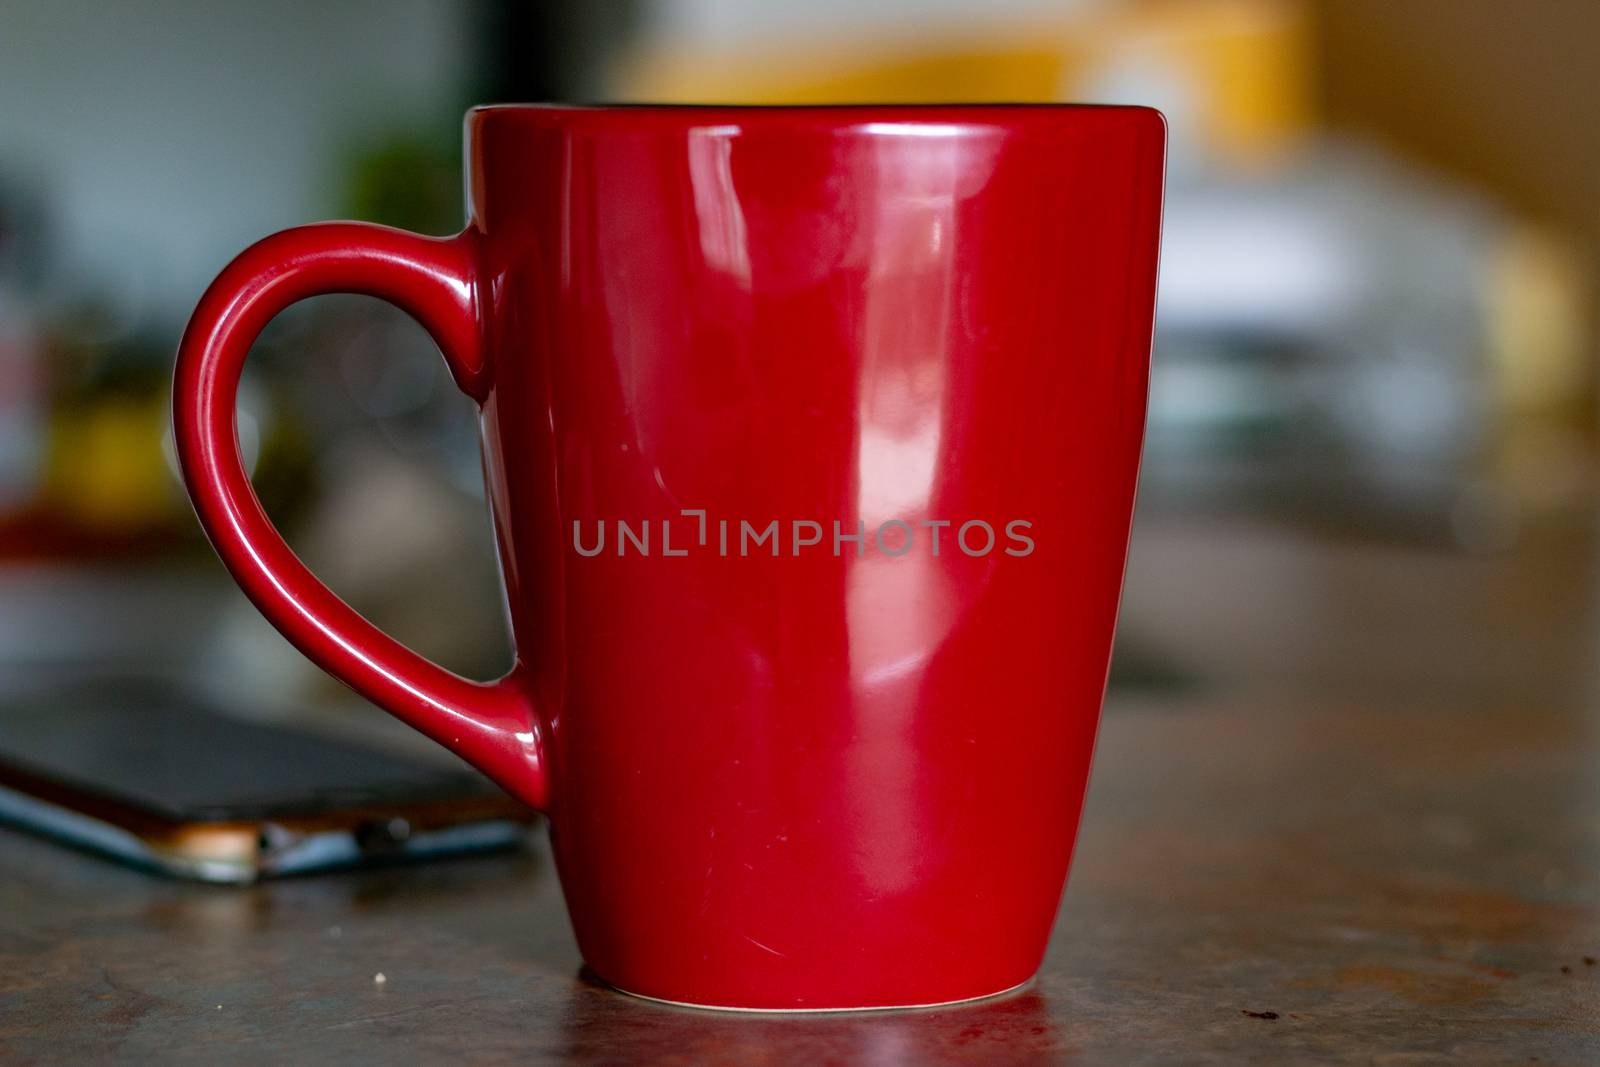 Old red coffee mug